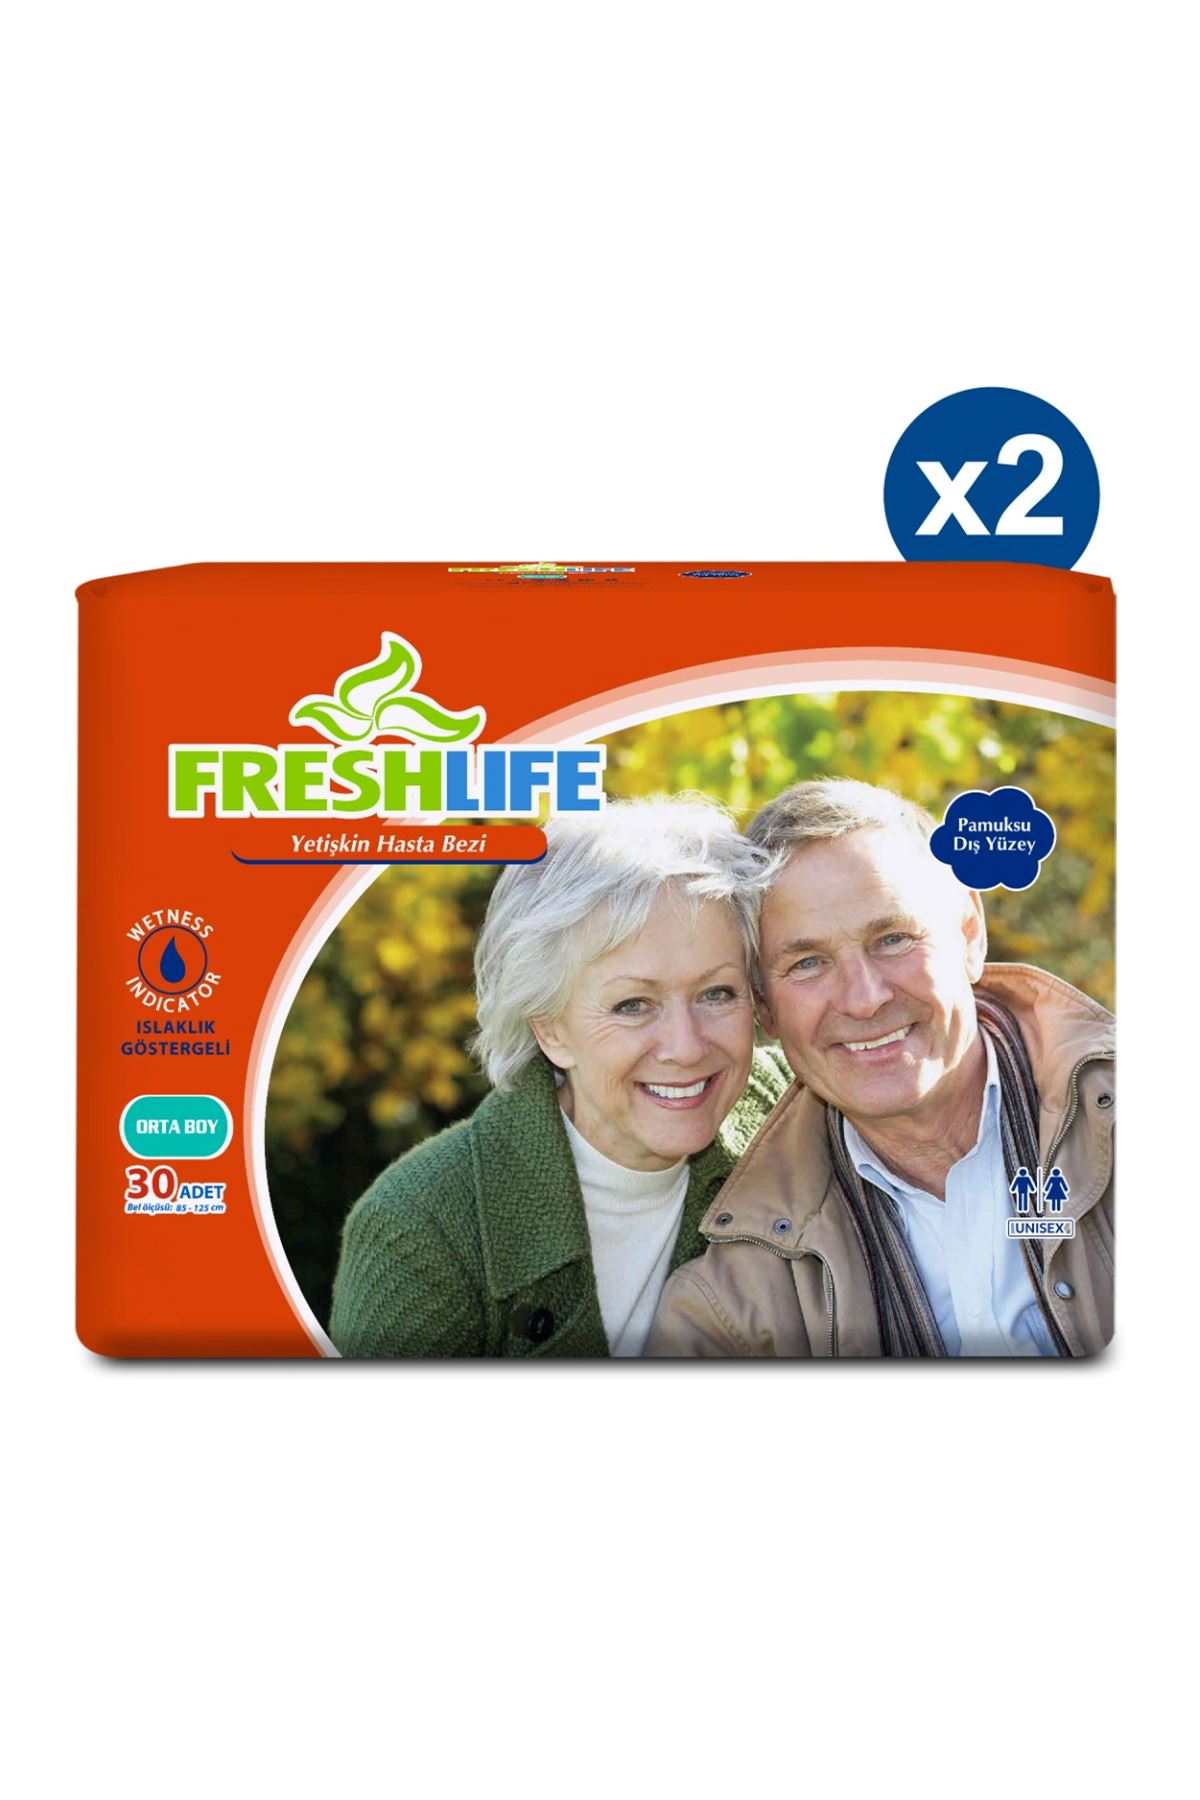 2'li Freshlife Medium Yetişkin Hasta Bezi 30x2 (60 Adet)